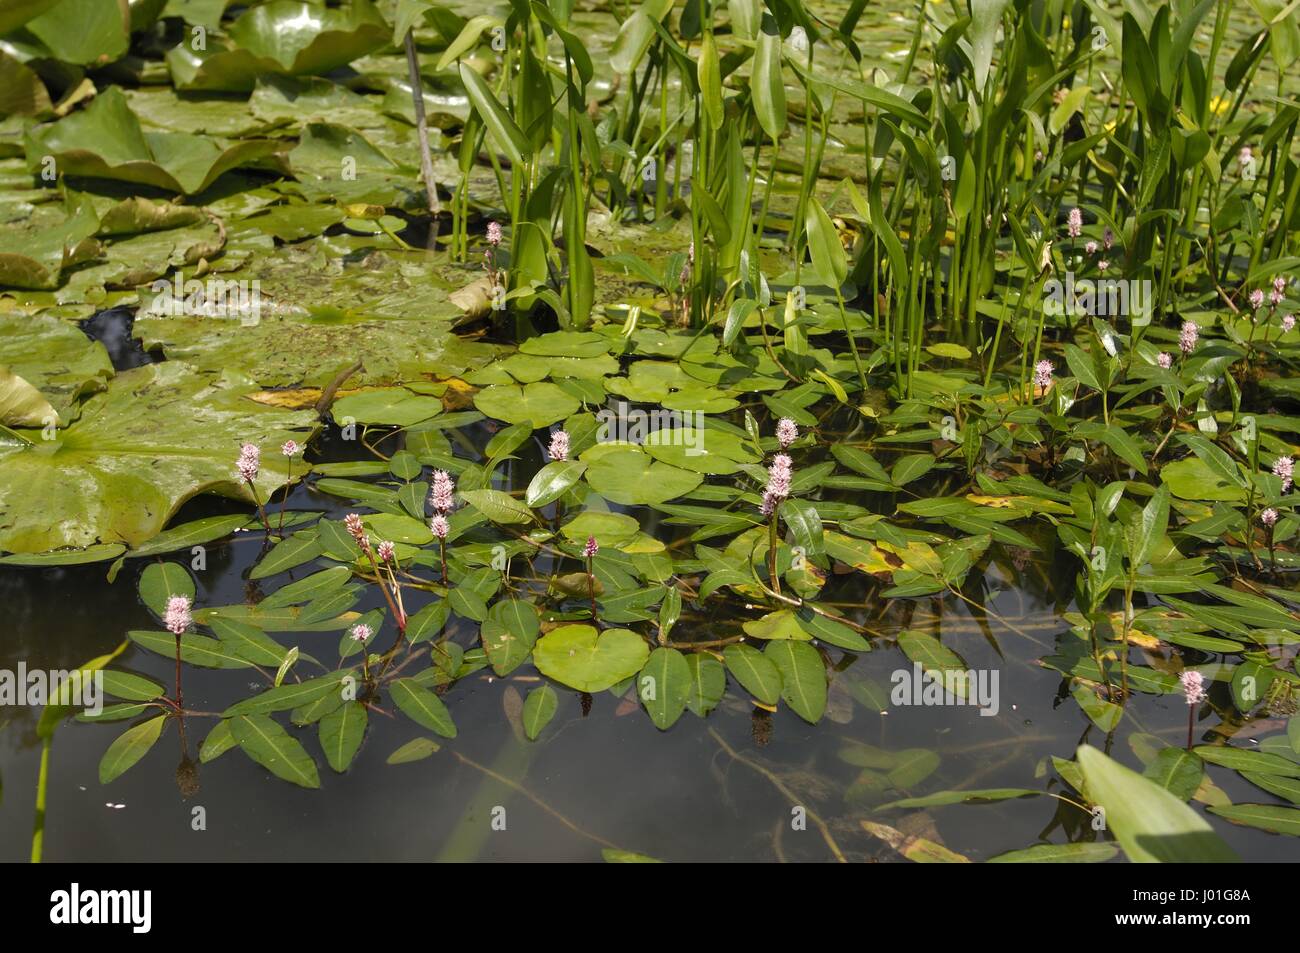 Water Smartweed - Longroot knotweed (Polygonum amphibium) flowering in a pond in summer Stock Photo